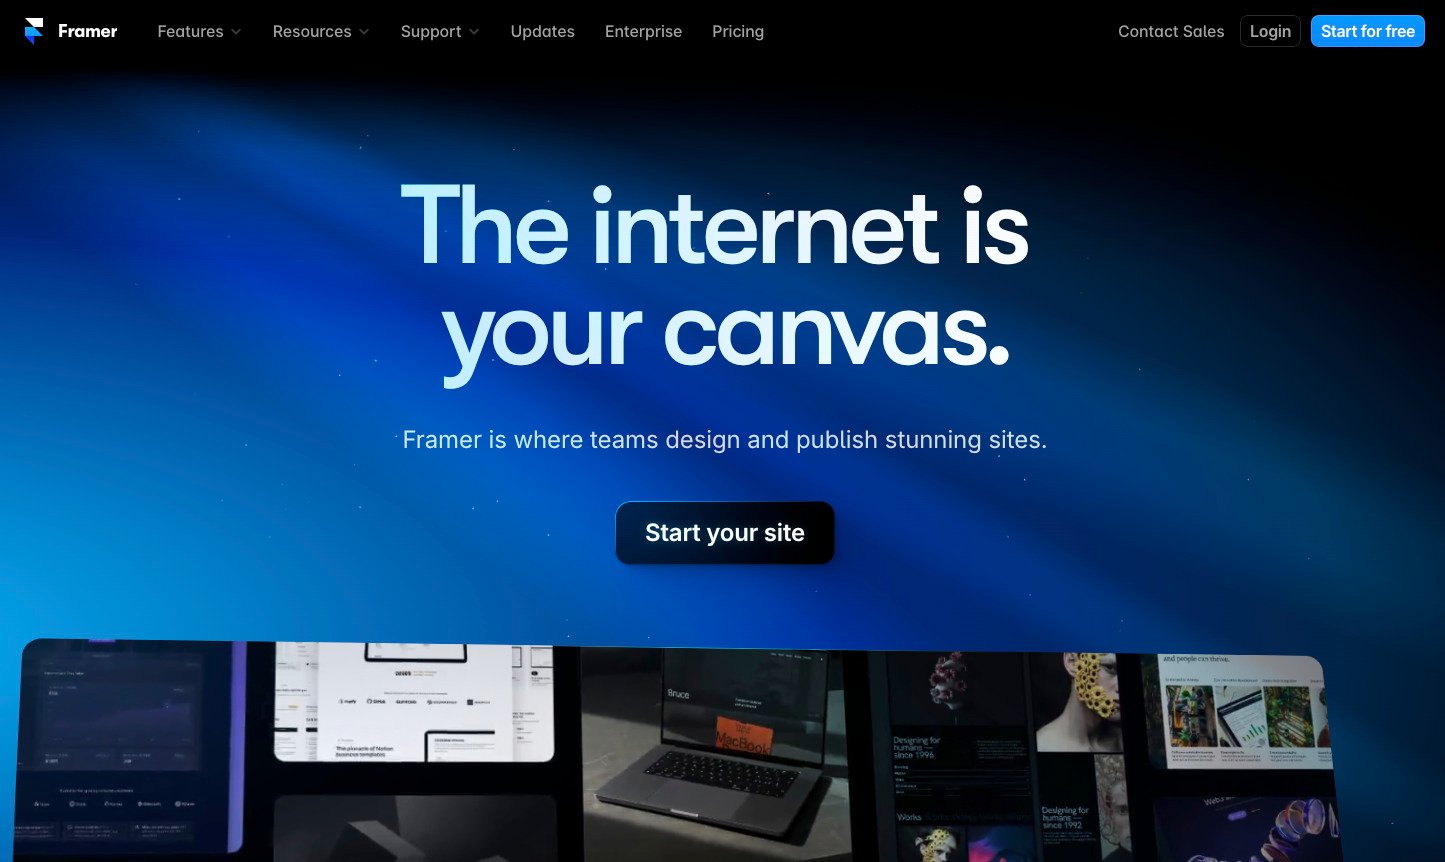 Página inicial do Framer com o texto 'The internet is your canvas' e um botão 'Start your site' para começar a criar sites impressionantes.